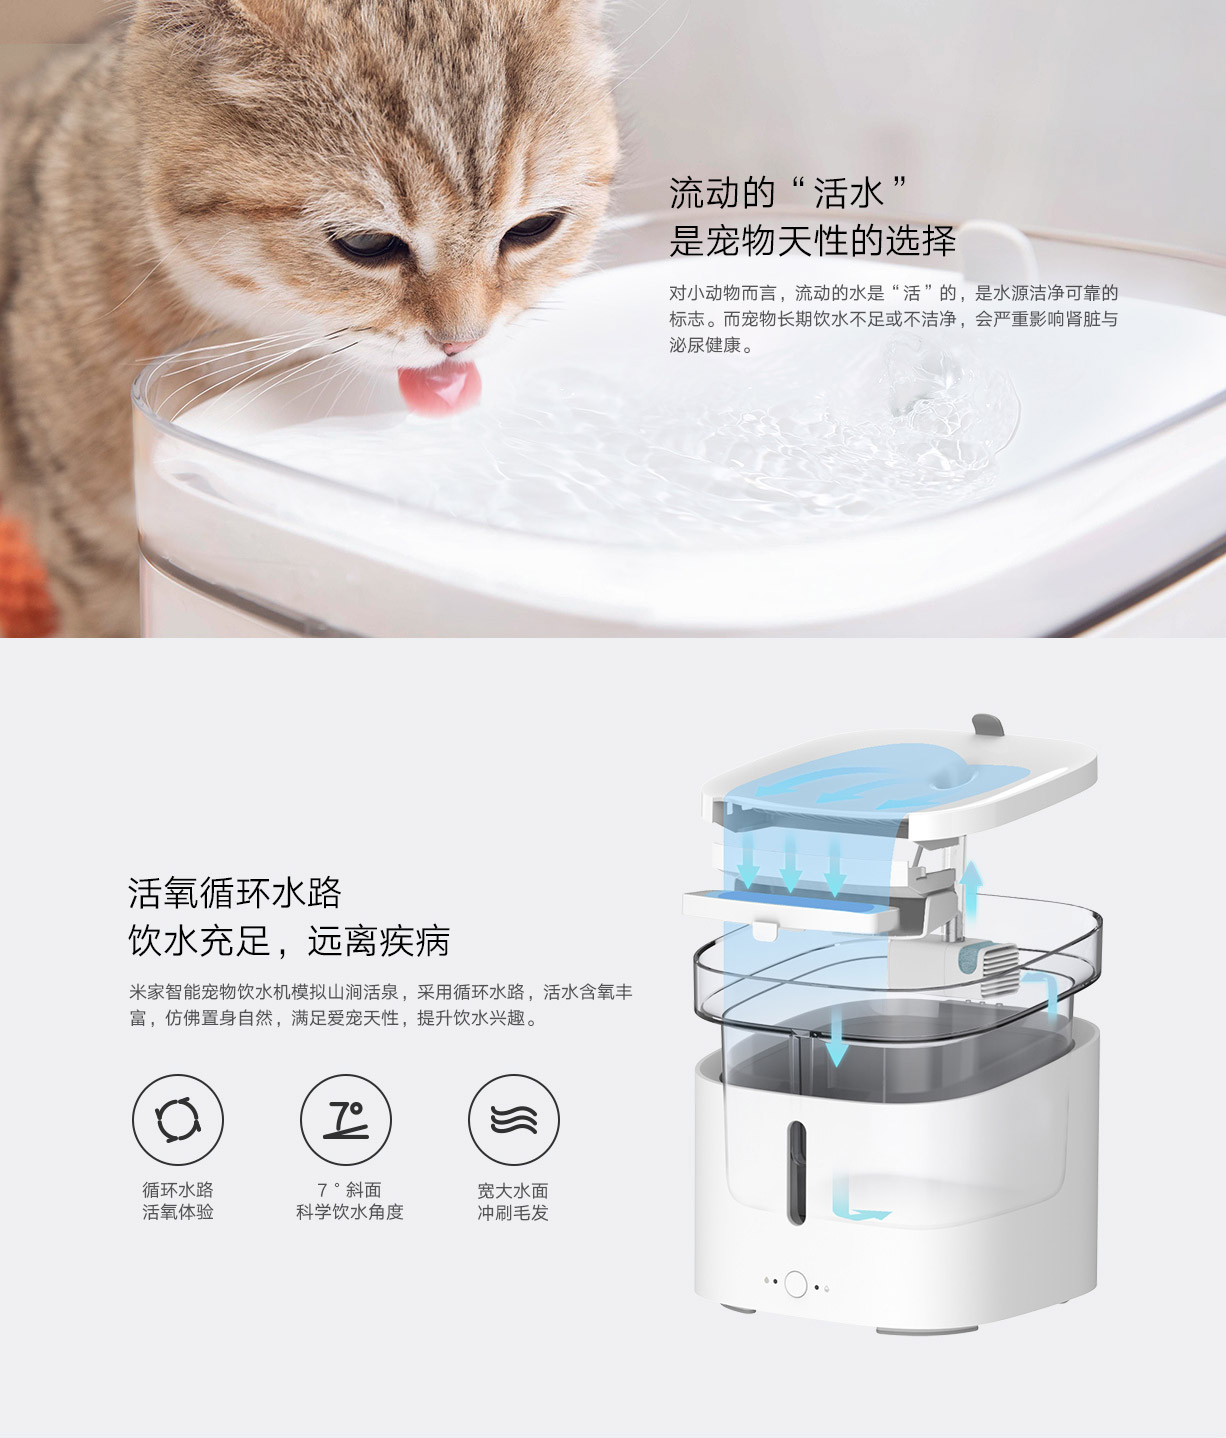 Xiaomi dispensador agua gatos y perros a la venta - Noticias Xiaomi